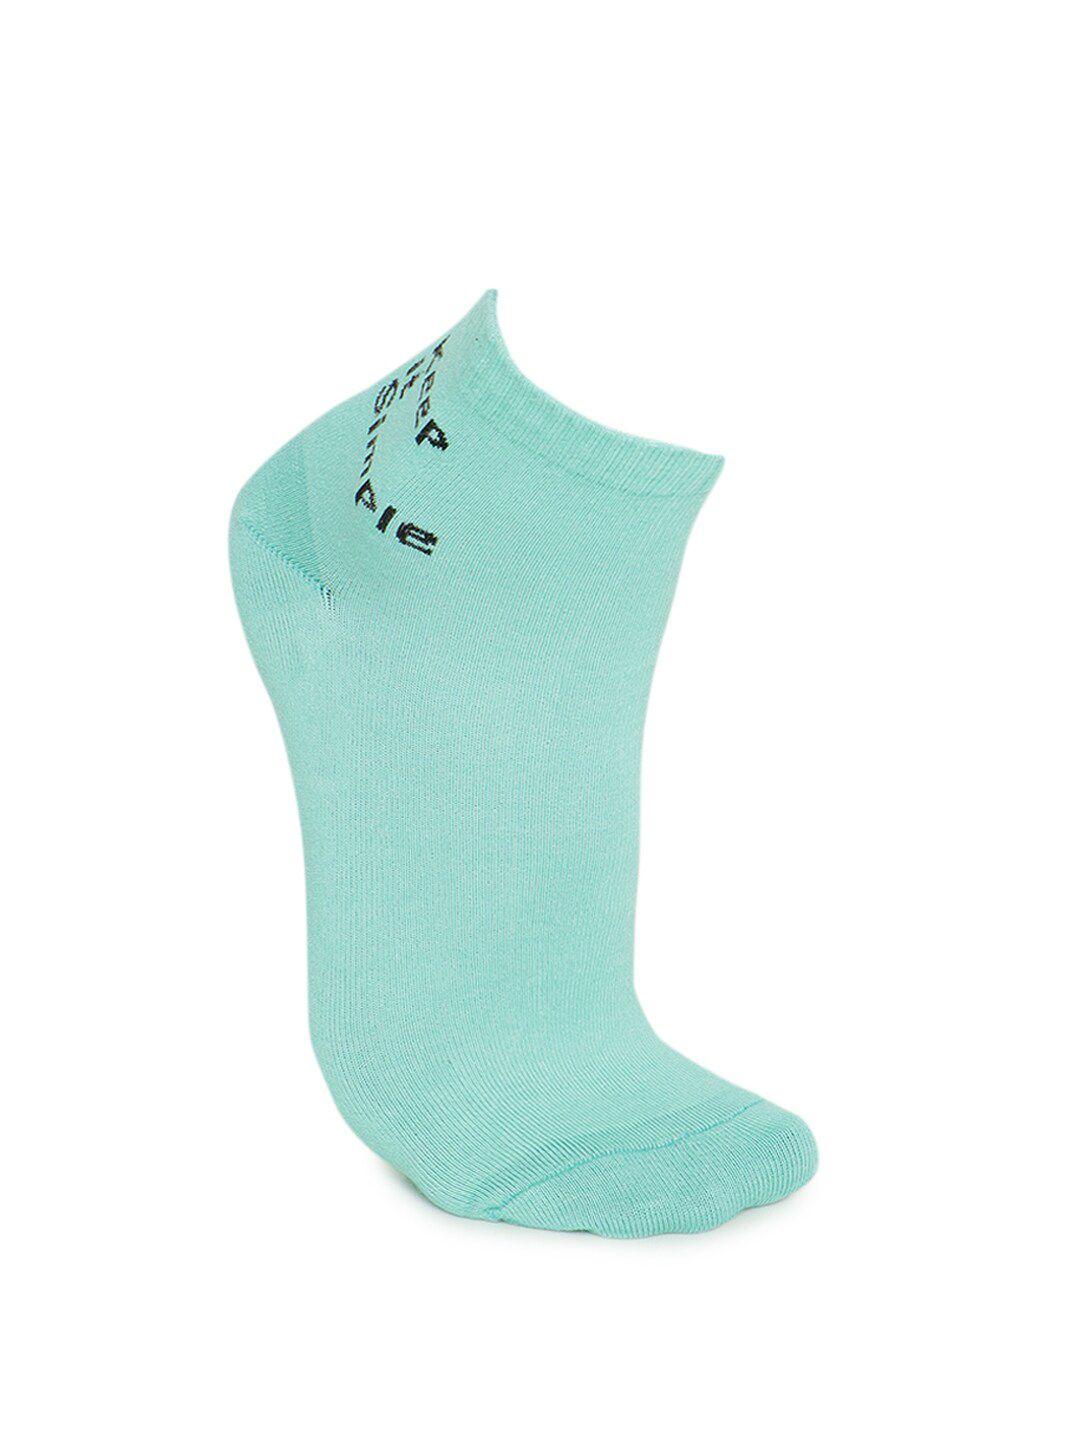 forever 21 mens blue cotton socks